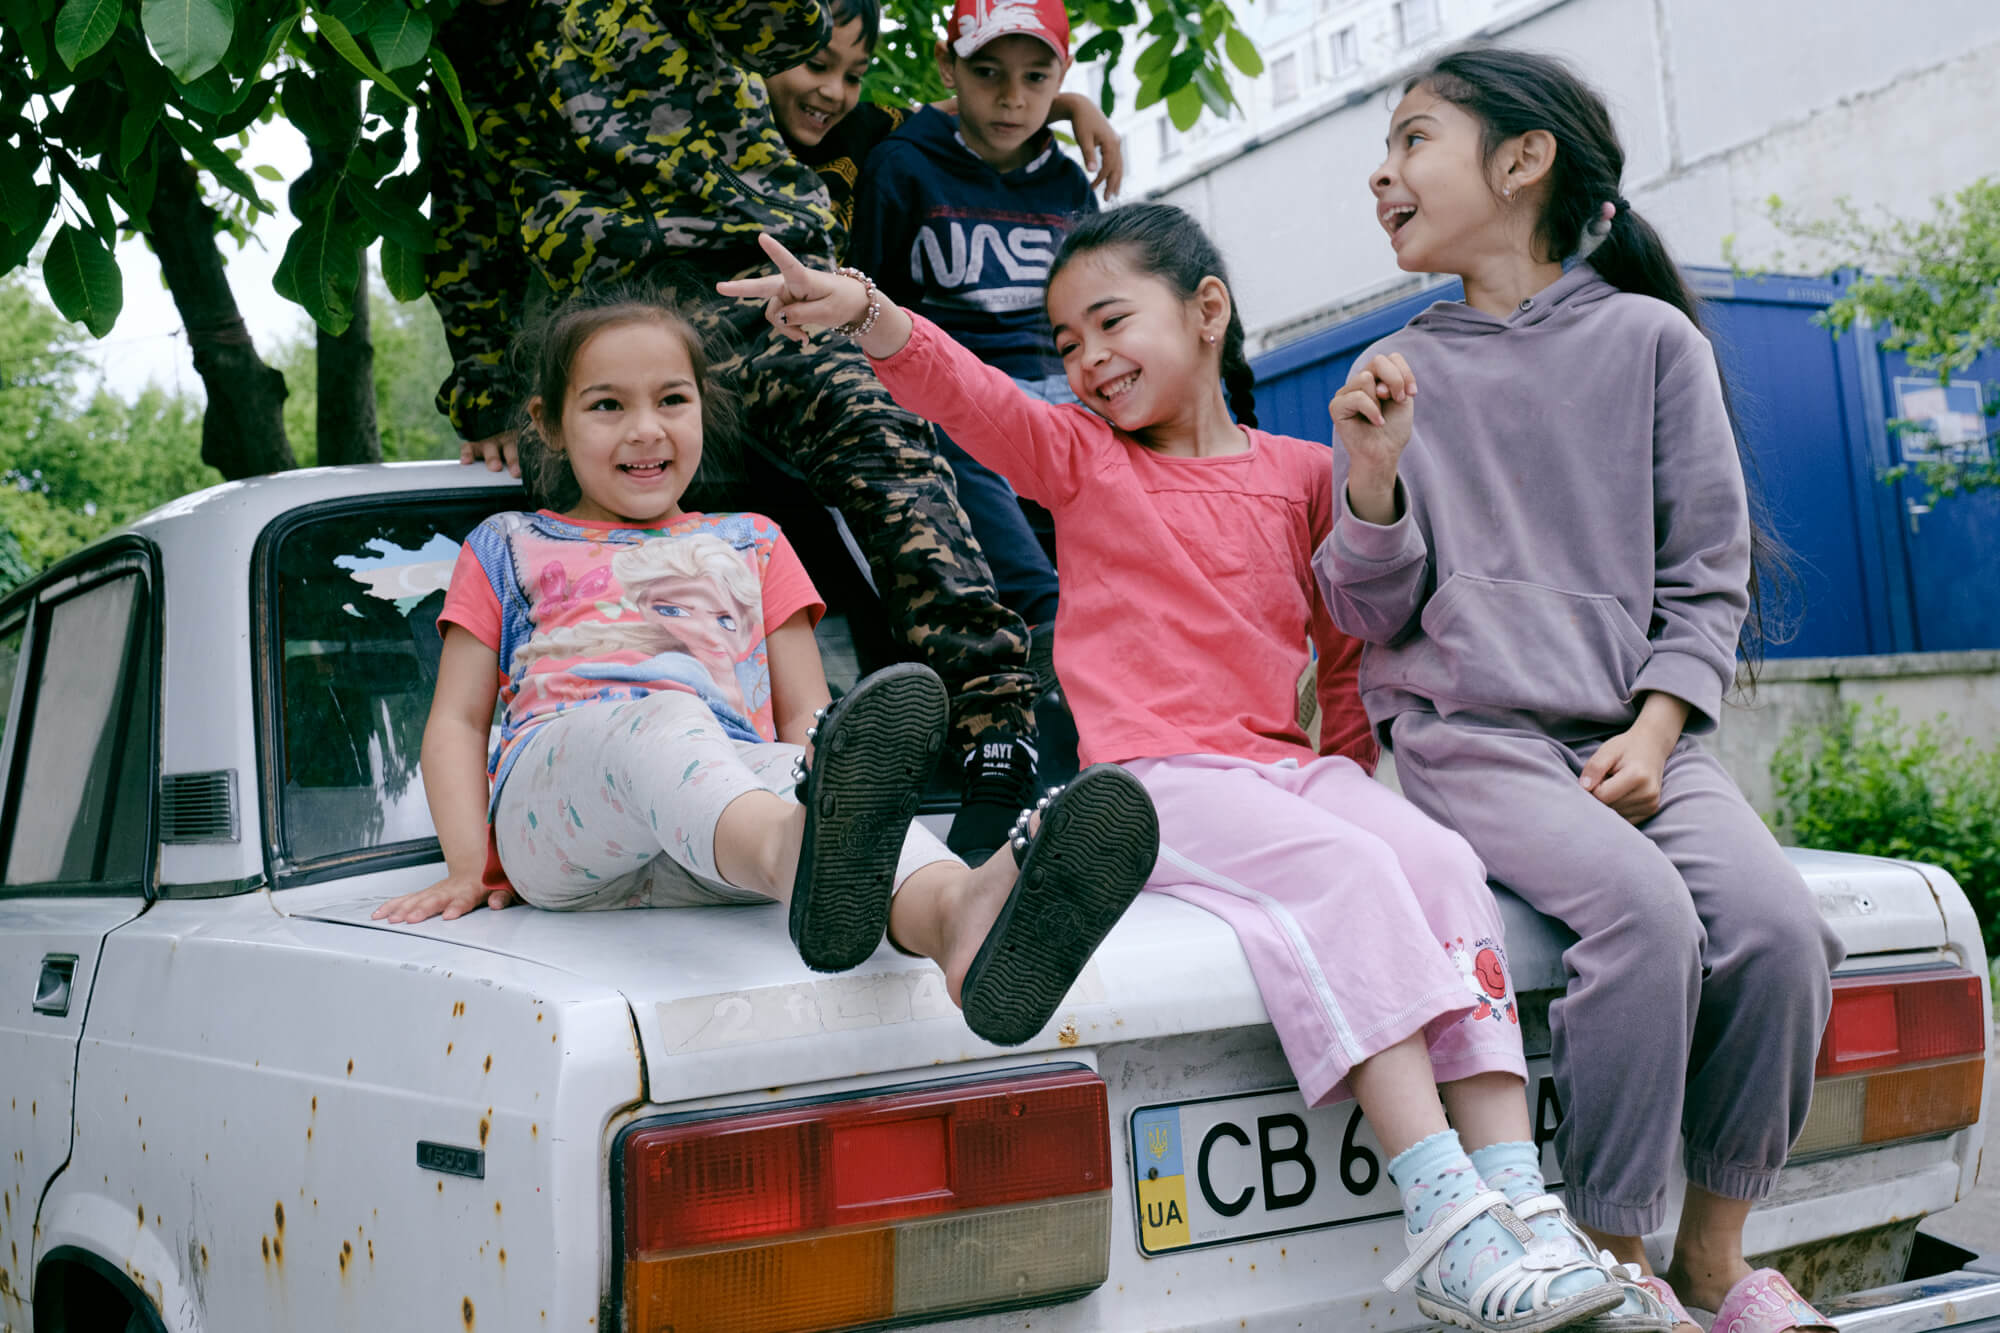 Діти бавляться на машині українського біженця. У цьому центрі в дітей рідко бувають уроки, тож здебільшого вони грають